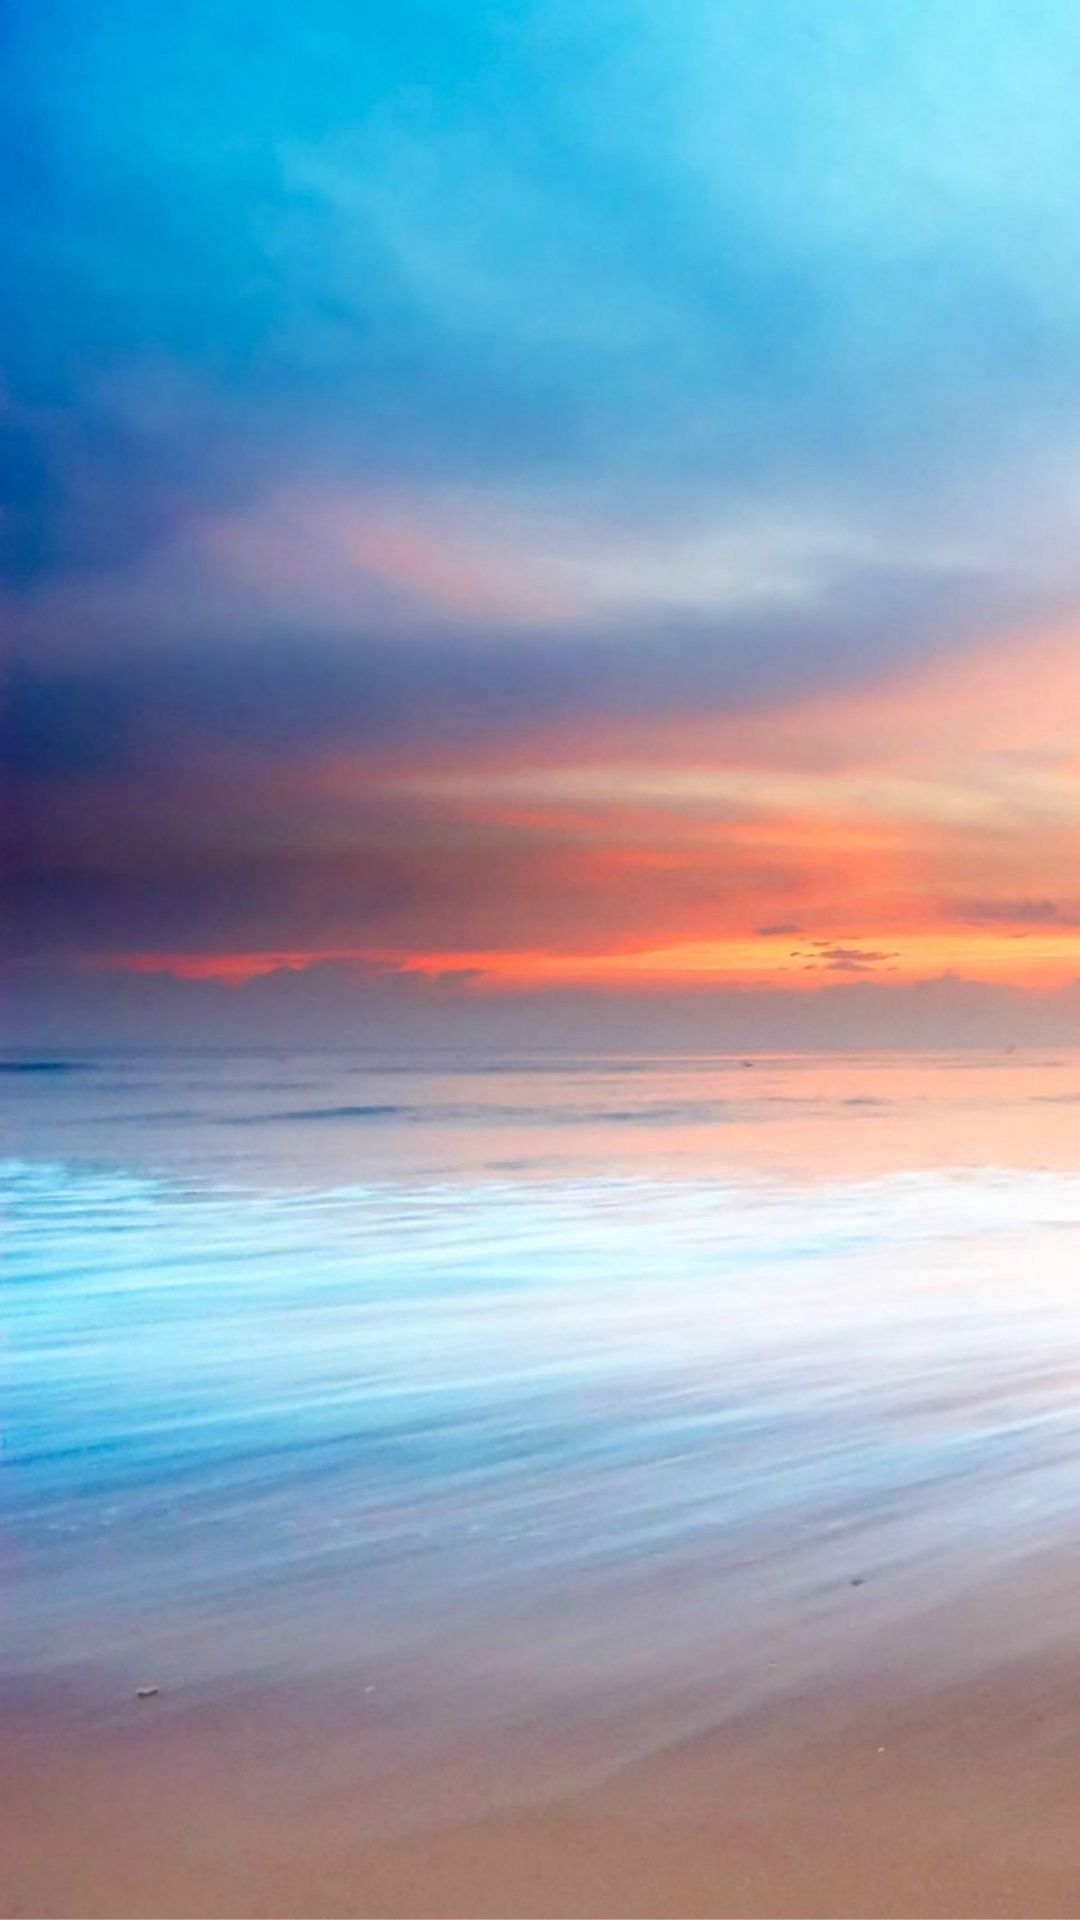 Nature Ocean Beach Sunset Bokeh Sky View iPhone 8 Wallpaper Free Download